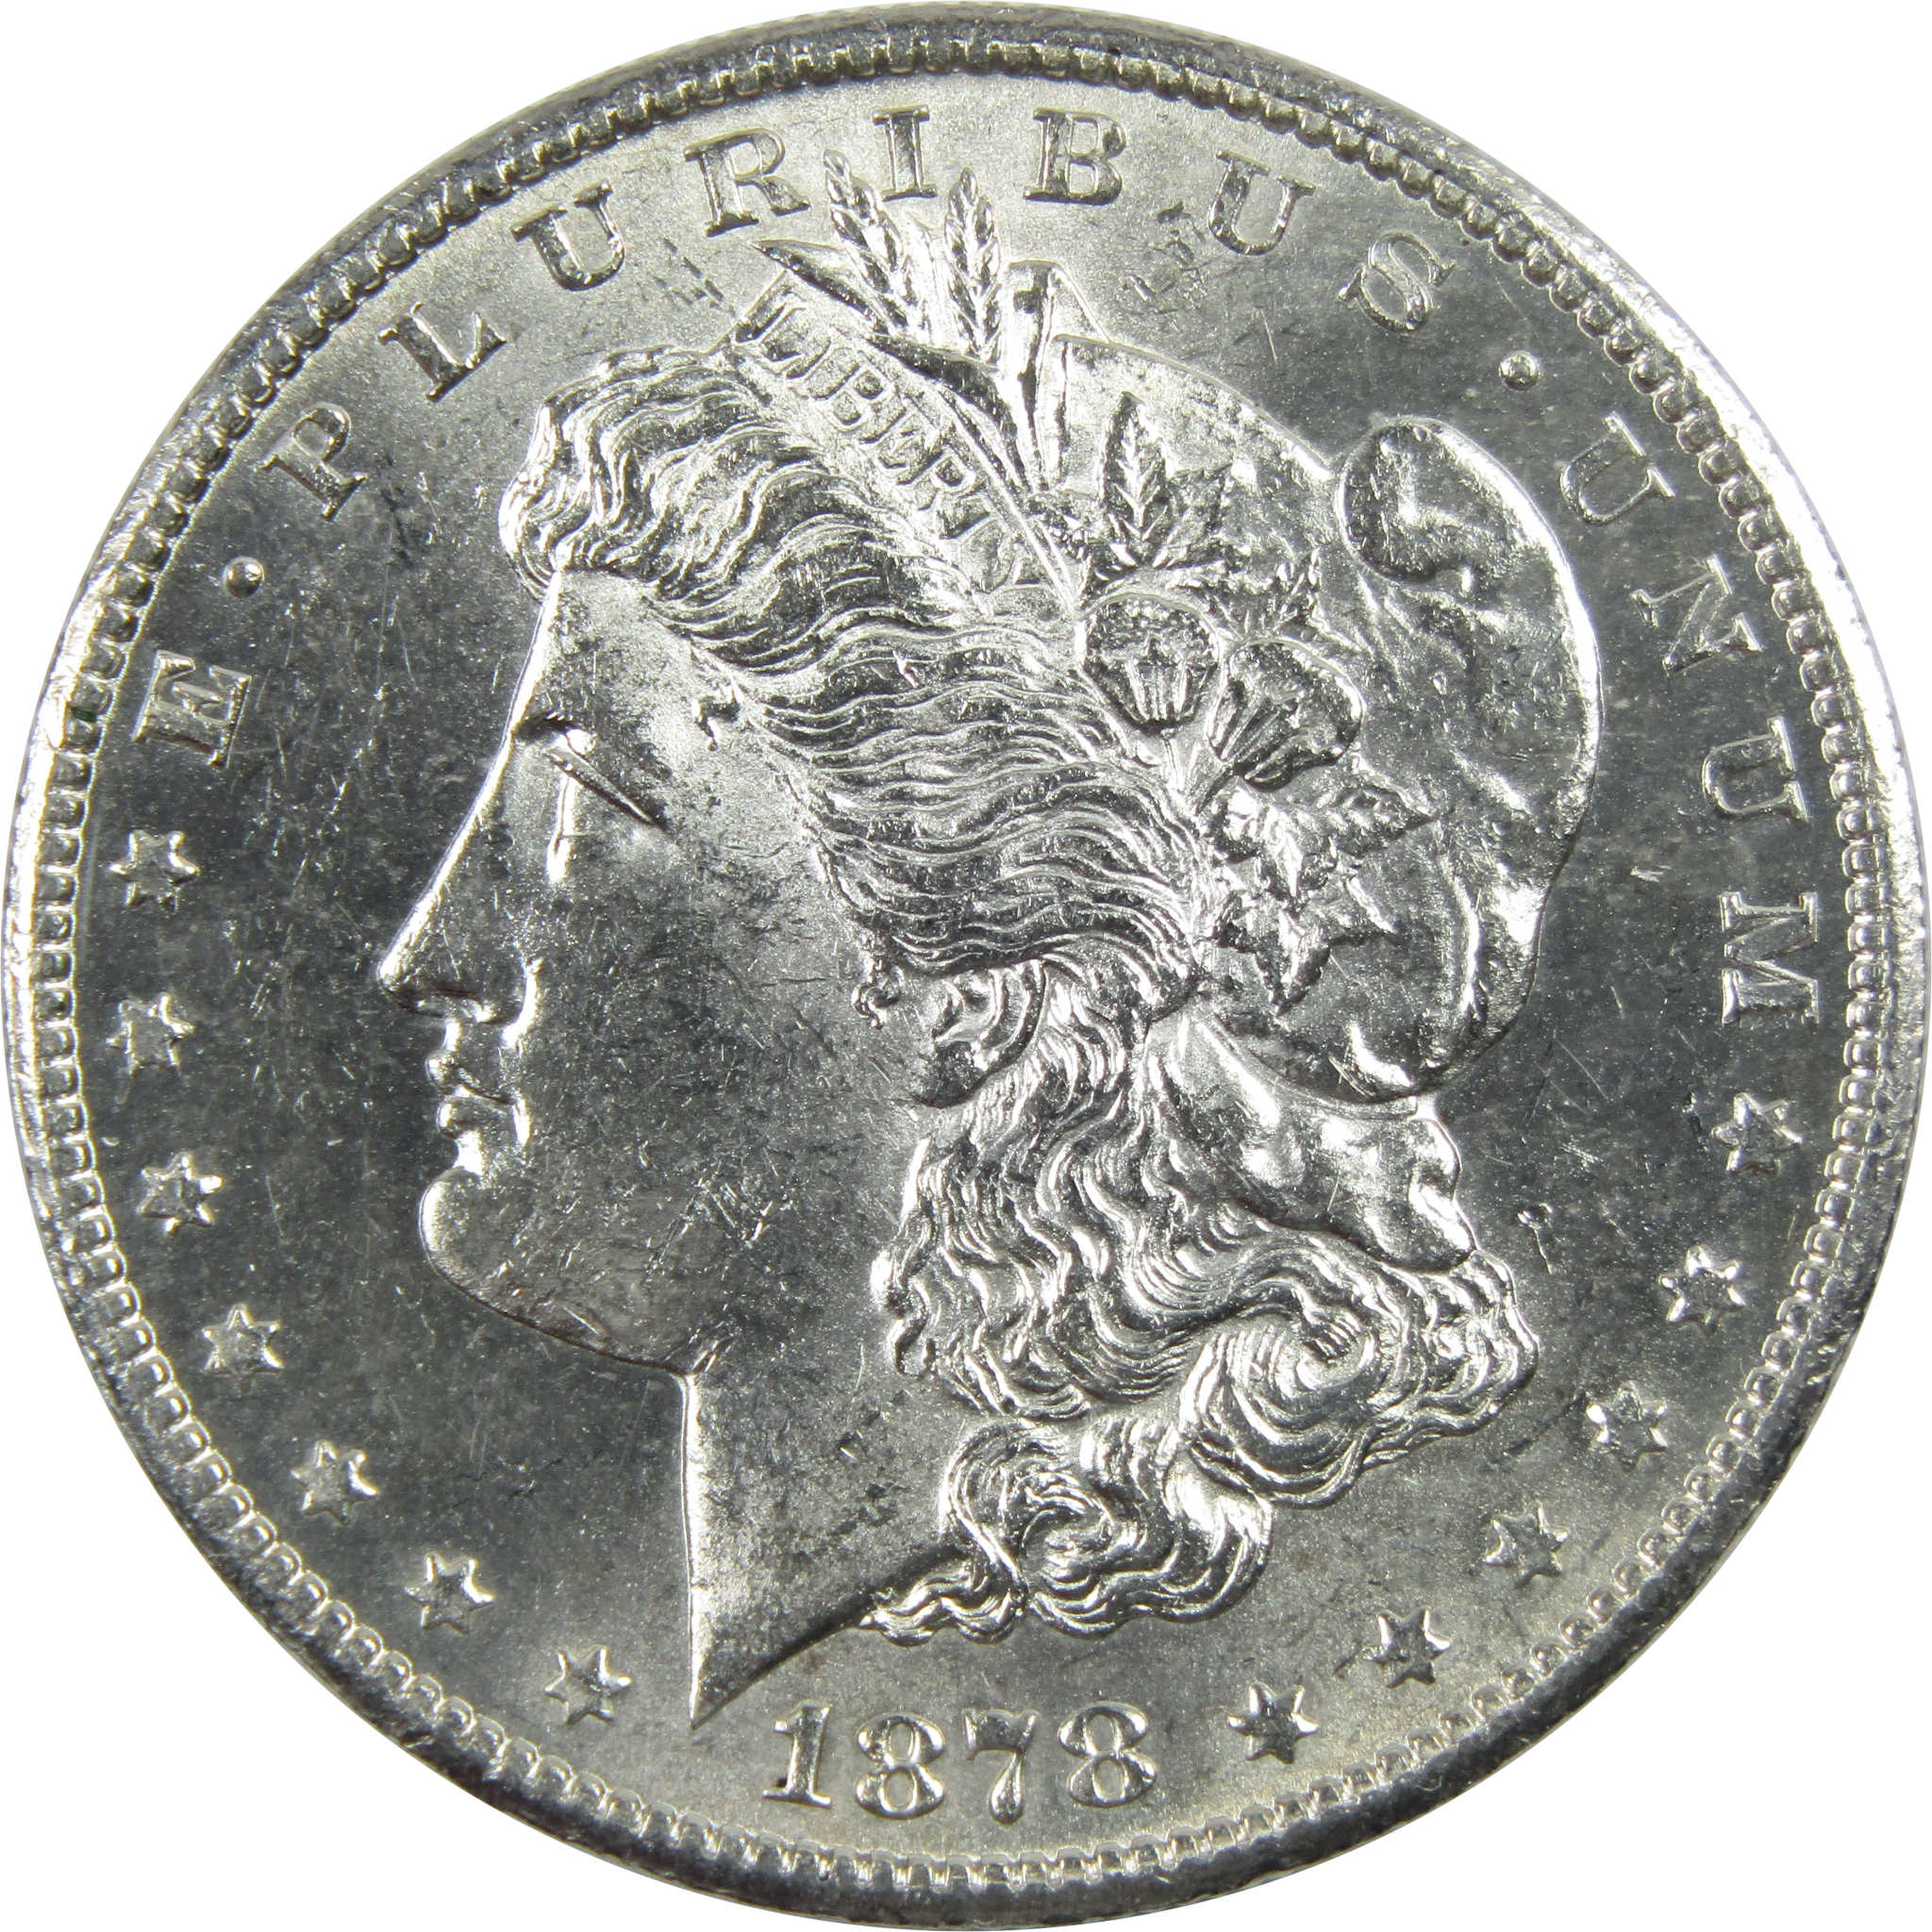 1878 S Morgan Dollar Borderline Uncirculated Silver $1 Coin SKU:I11694 - Morgan coin - Morgan silver dollar - Morgan silver dollar for sale - Profile Coins &amp; Collectibles